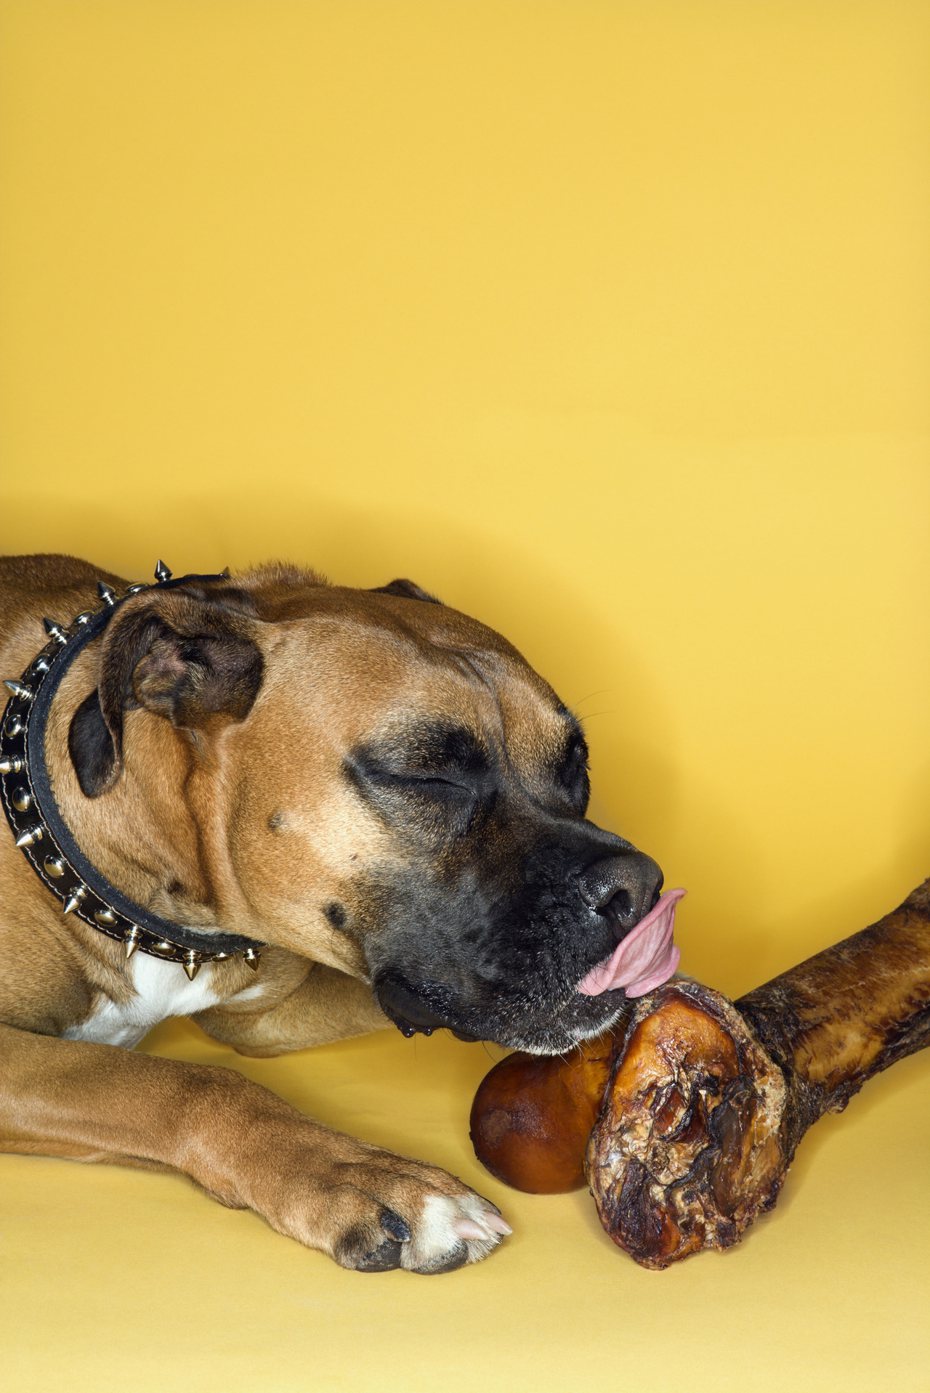 一隻貪吃的拳師狗突然吃不下飯，帶去檢查發現牠竟然吞了16顆高爾夫球下肚。圖為示意圖，非當事拳師狗。 （圖/Ingimage）